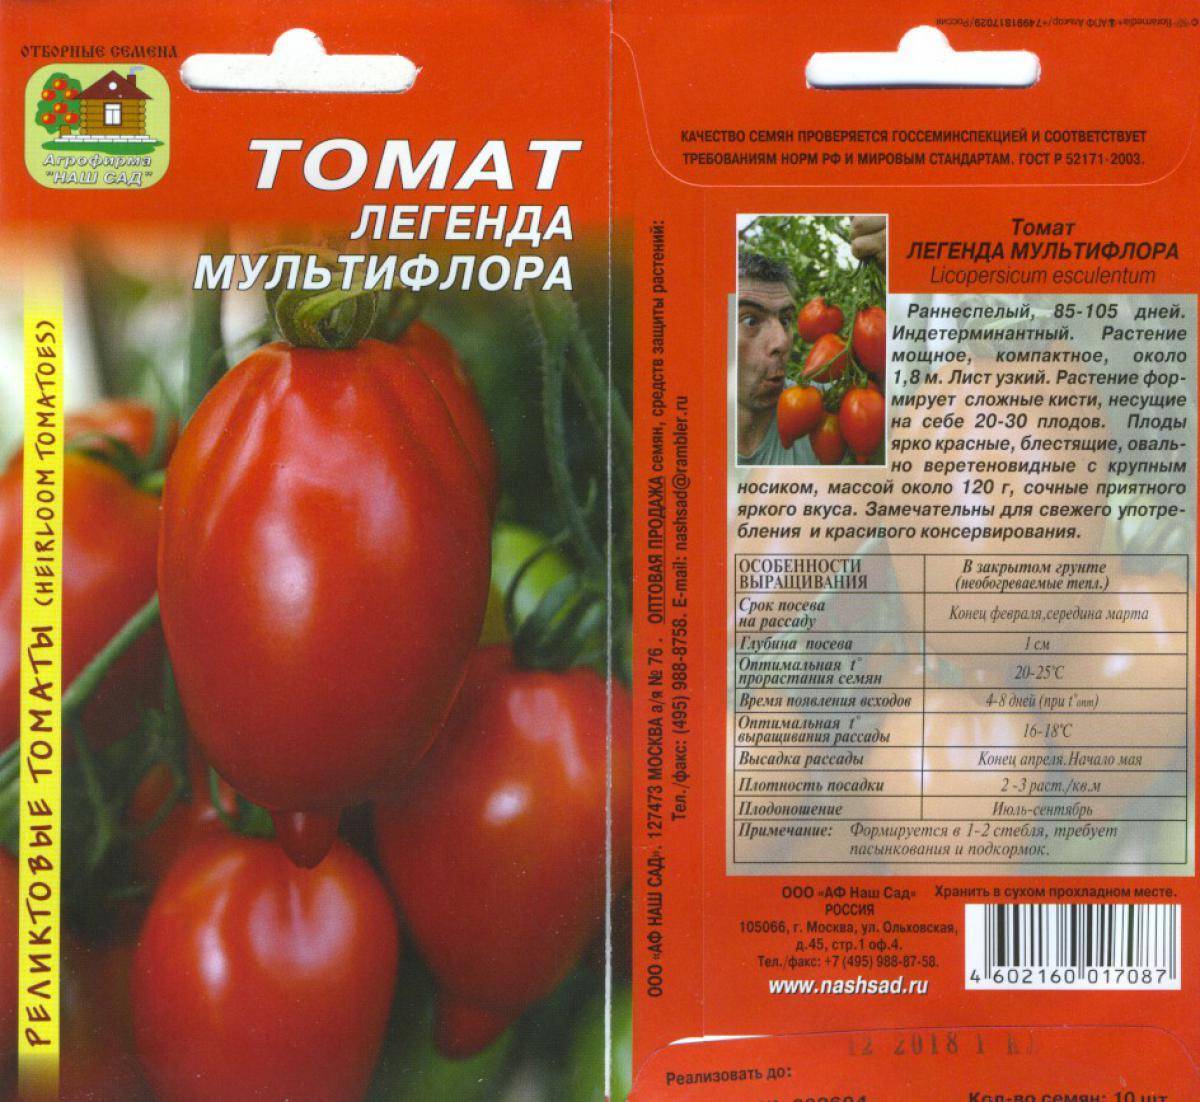 Сорт томат «легенда тарасенко» (мультифлора): отзывы, фото, урожайность